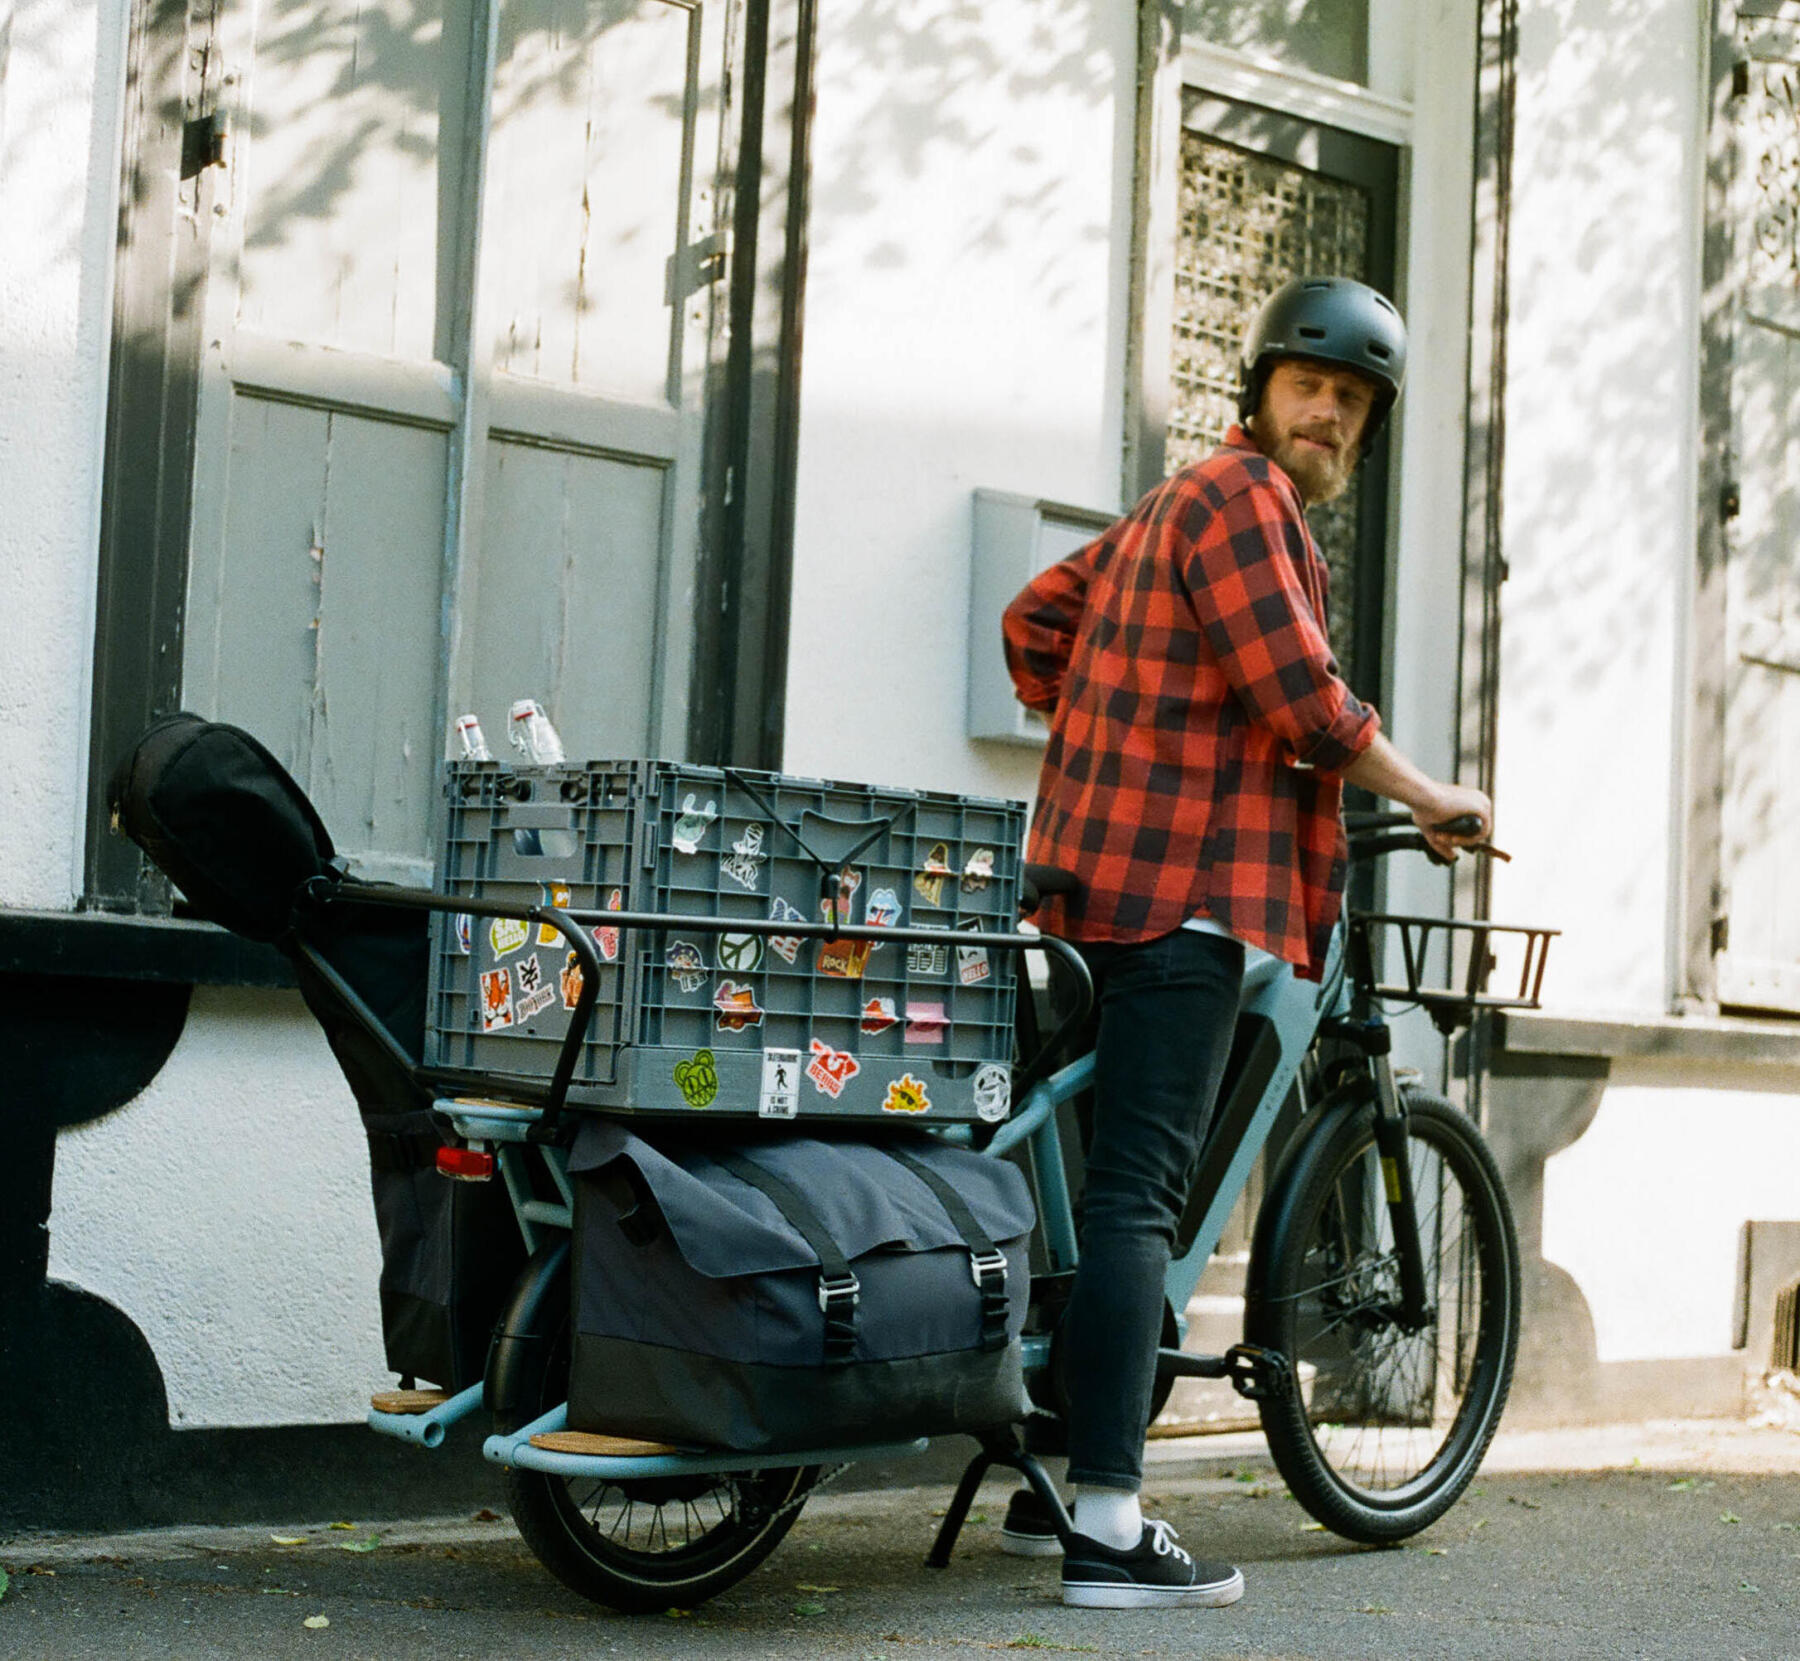 Comment transporter facilement vos affaires à vélo ?